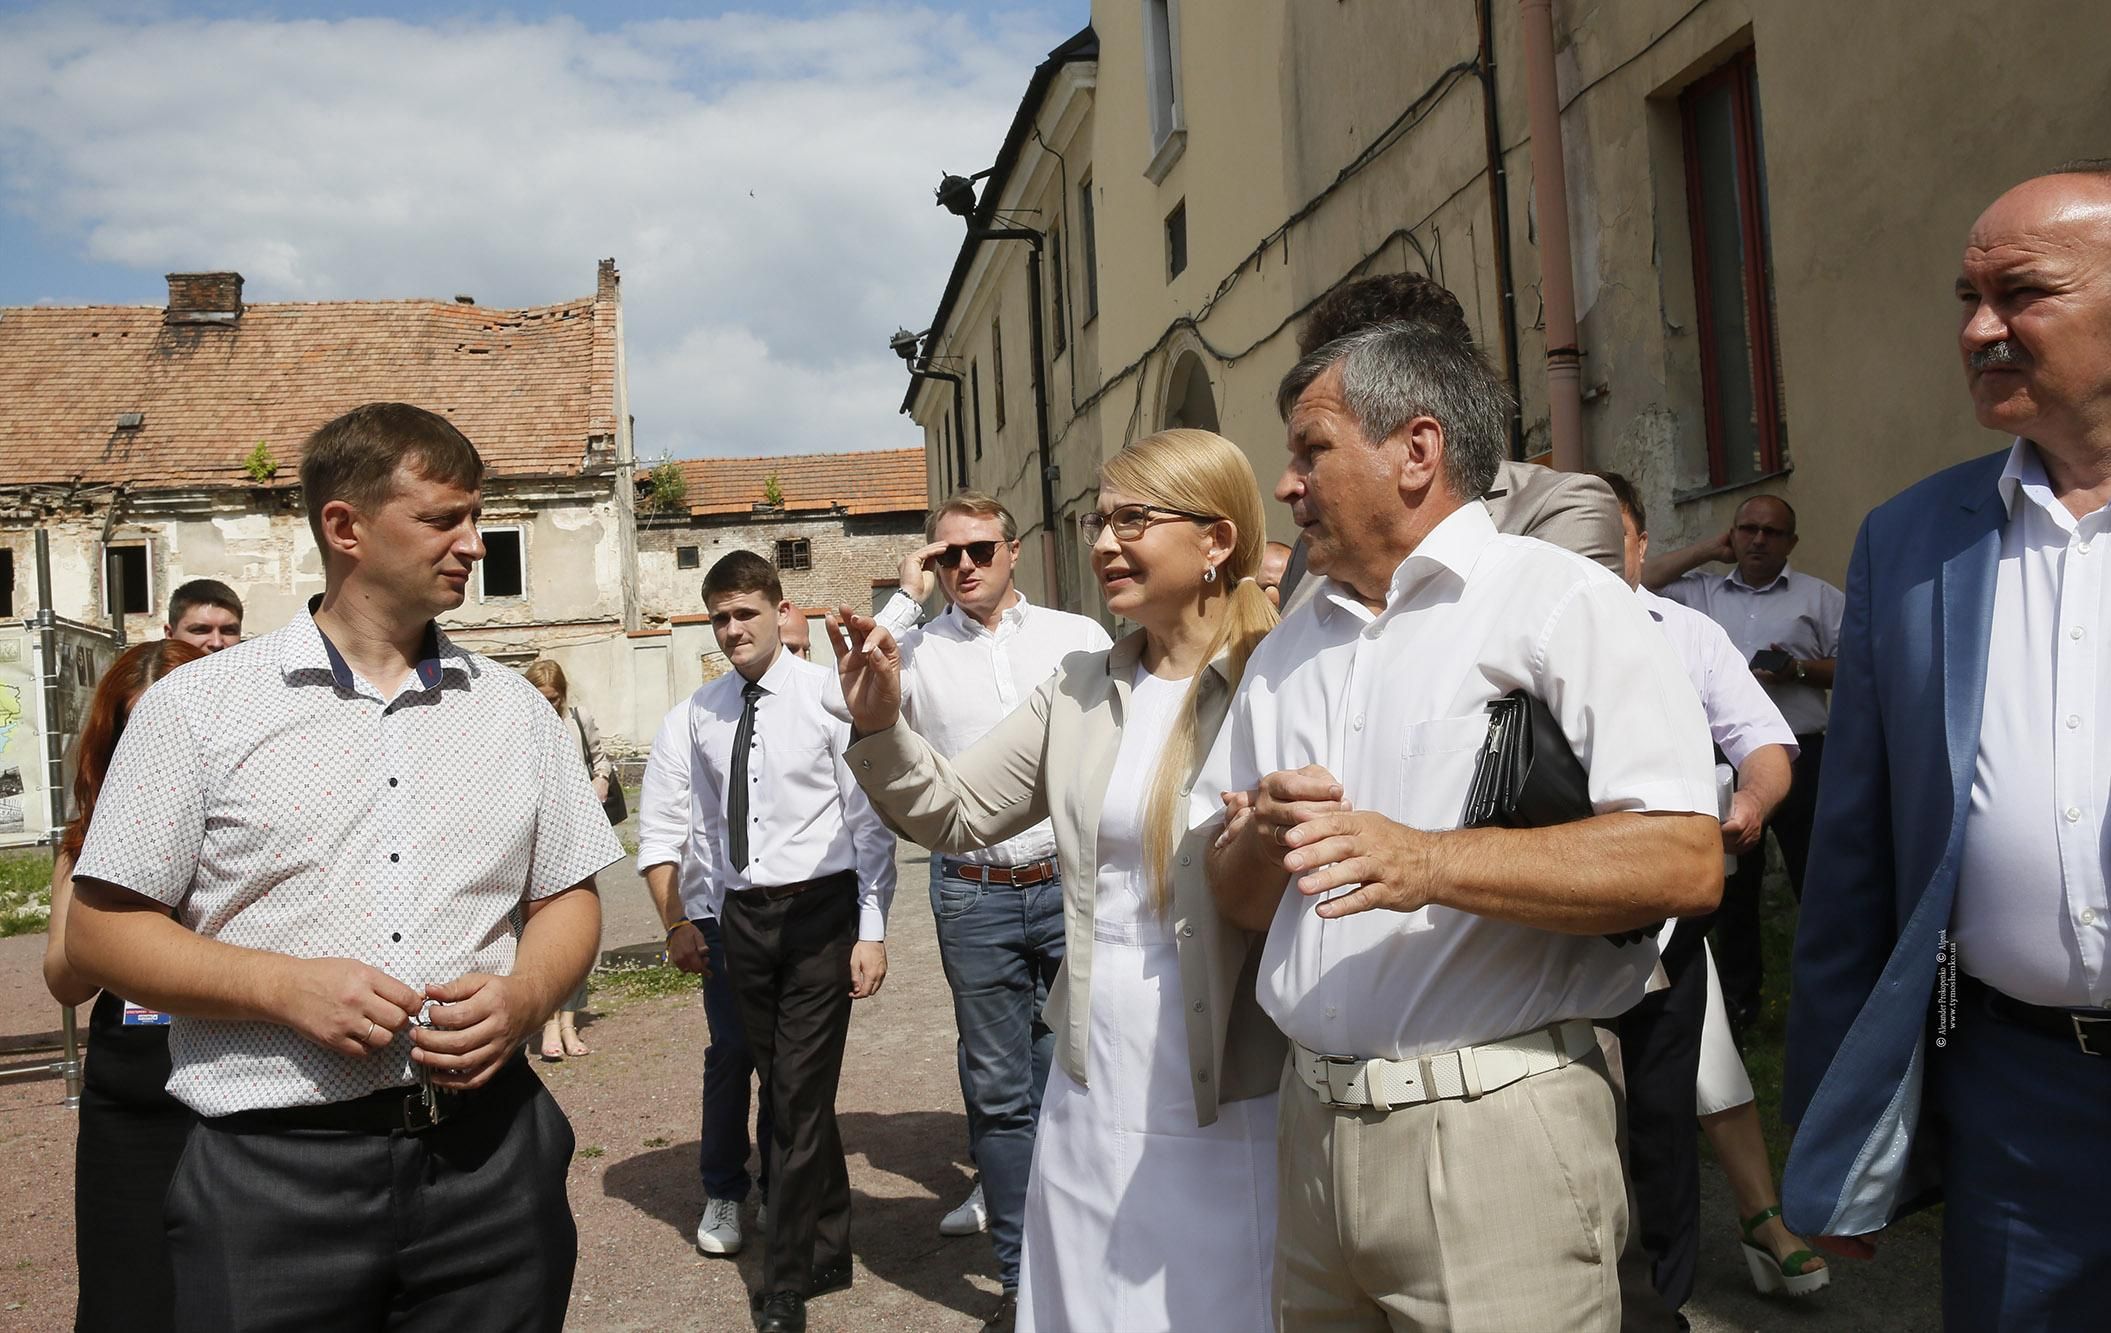 Треба використовувати унікальність малих міст як капітал для їхнього розвитку, – Тимошенко